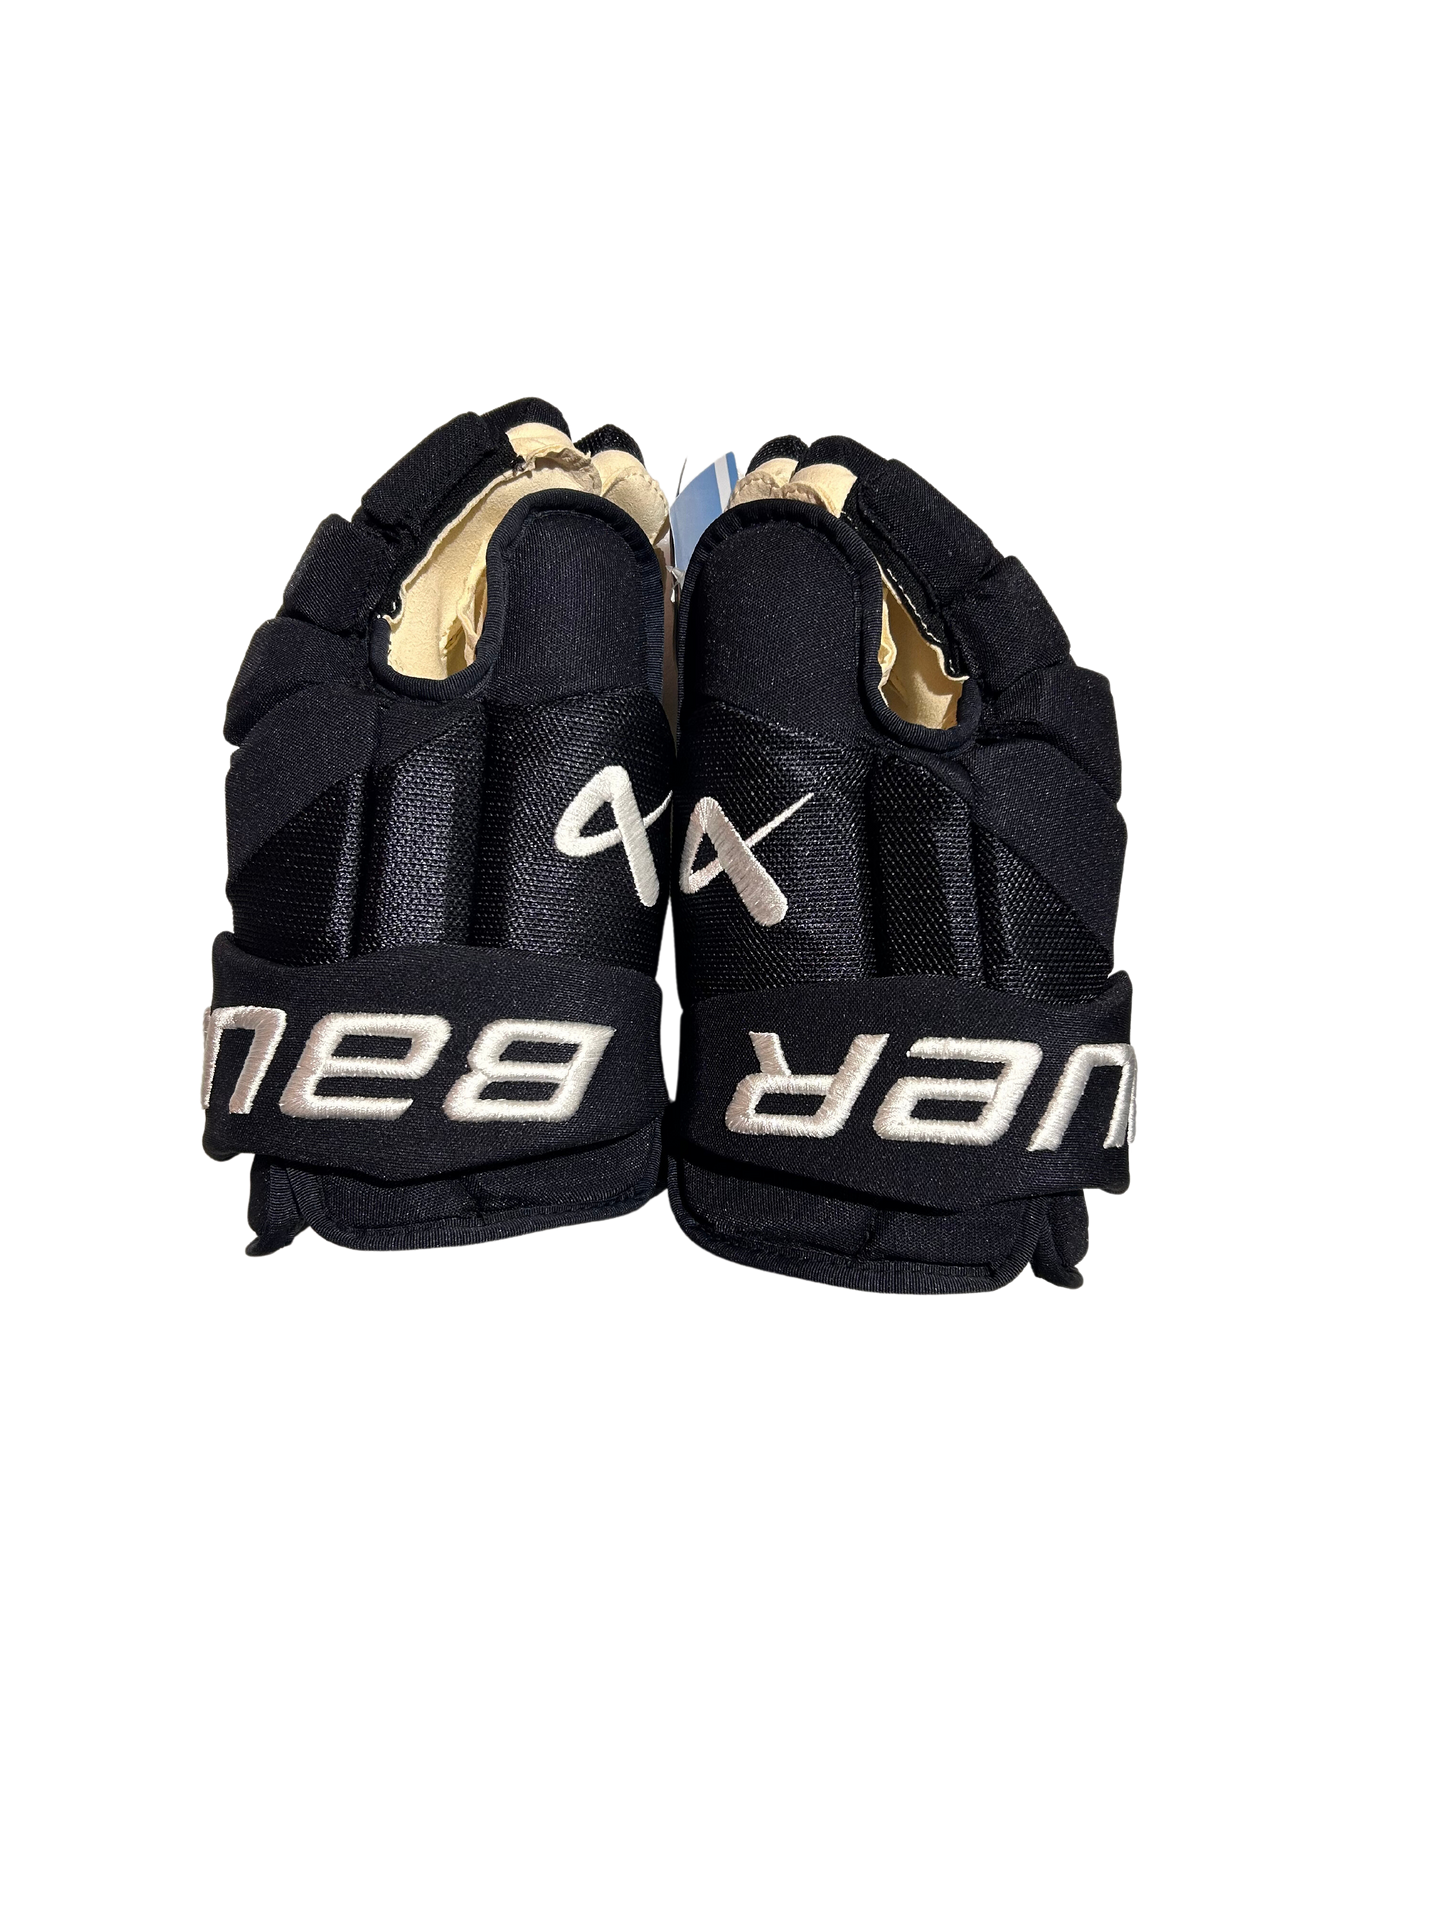 New Navy Team Issued Colorado Avalanche 14" Bauer Vapor Hyperlite Gloves